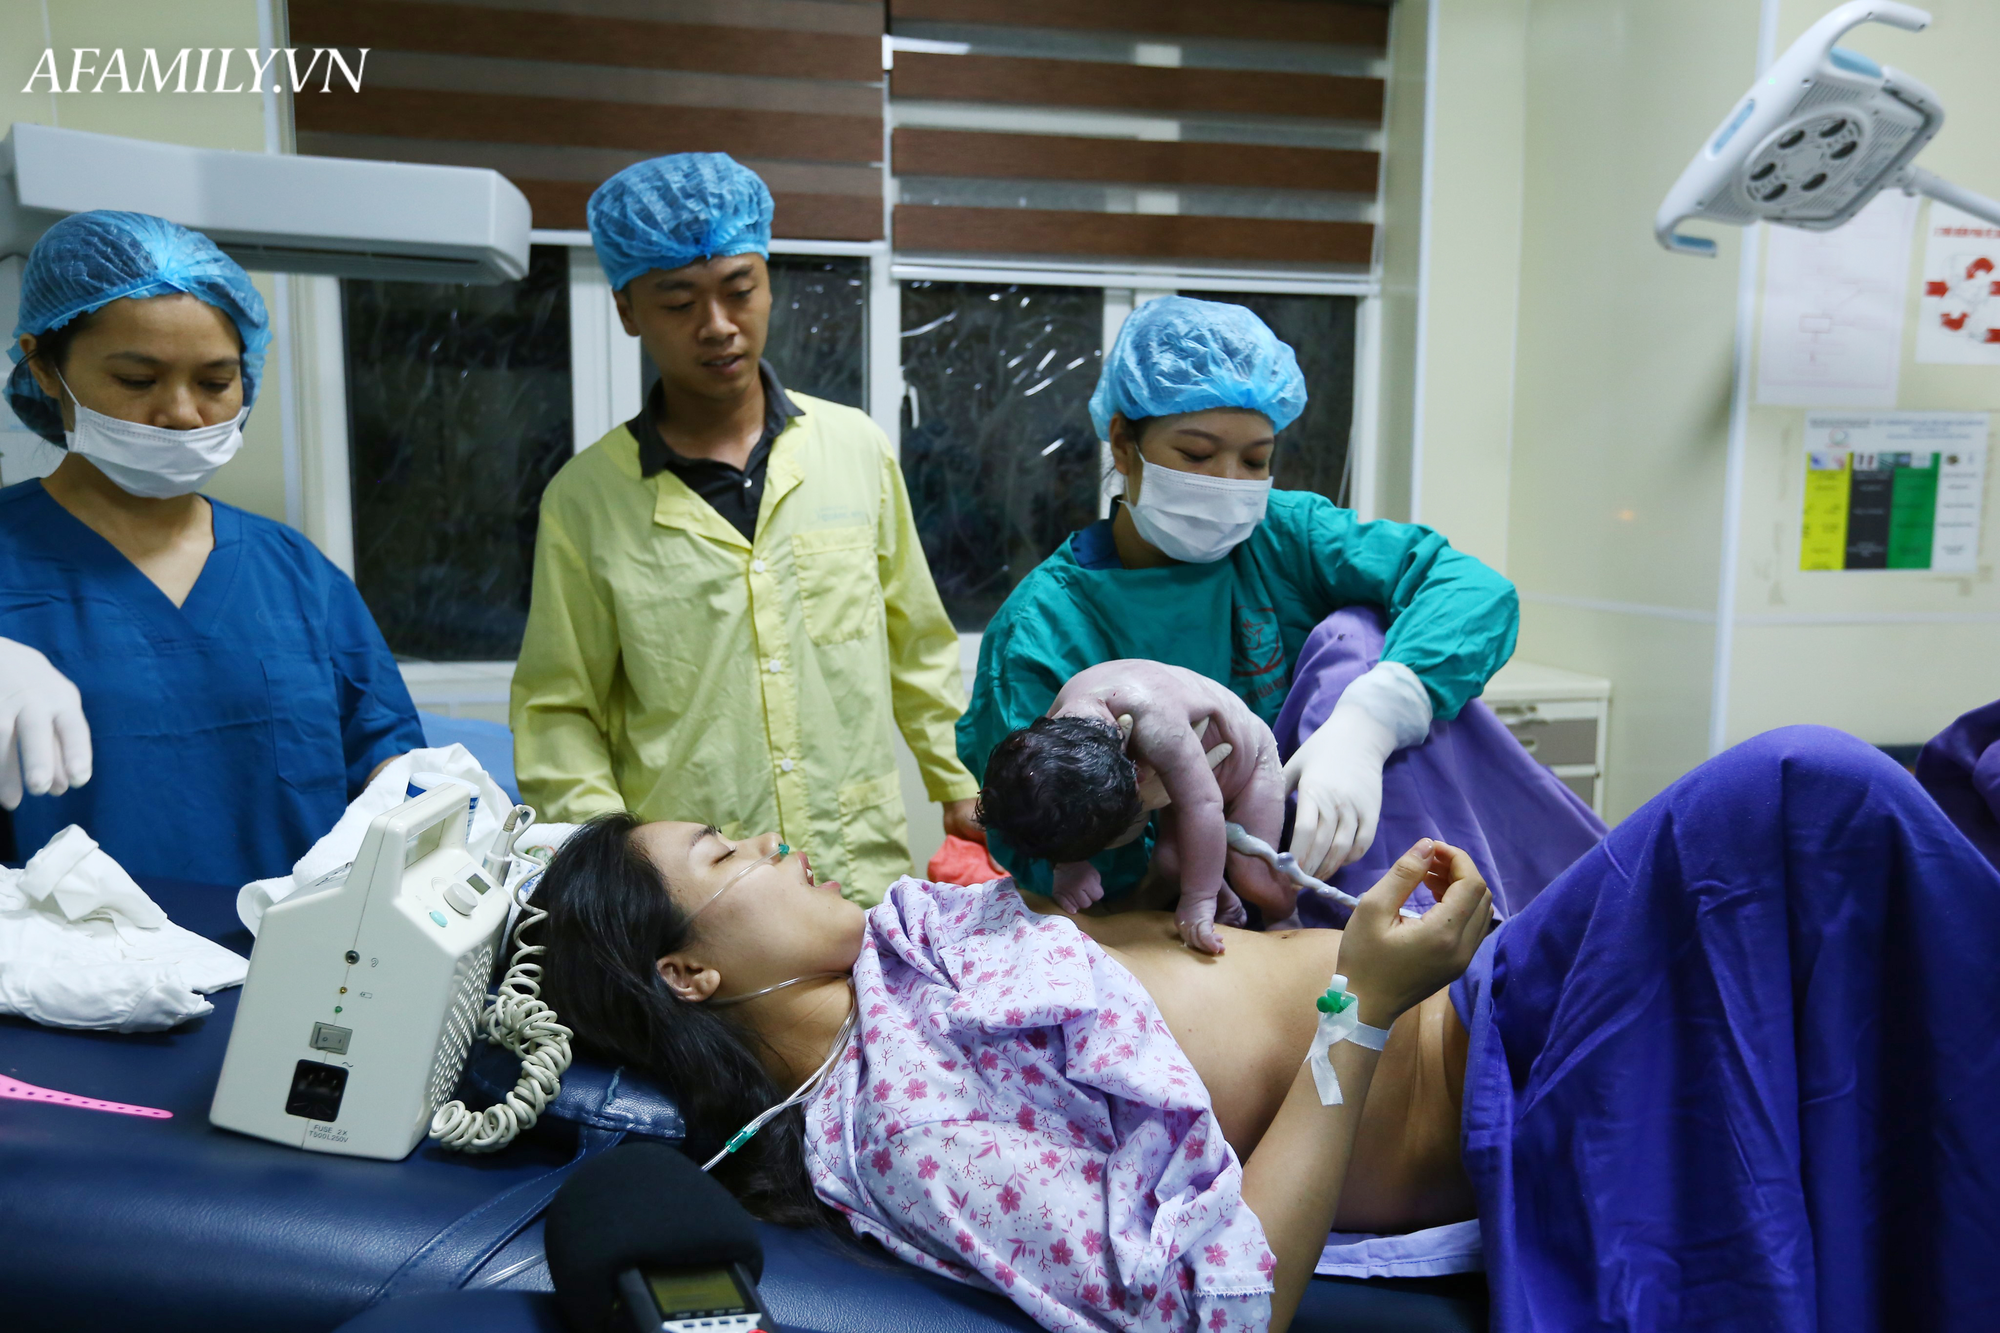 Phòng sinh thân thiện ở Bệnh viện Sản nhi Quảng Ninh: Sản phụ nào cũng được có người nhà đi kèm động viên lúc vượt cạn mà không mất thêm chi phí - Ảnh 3.